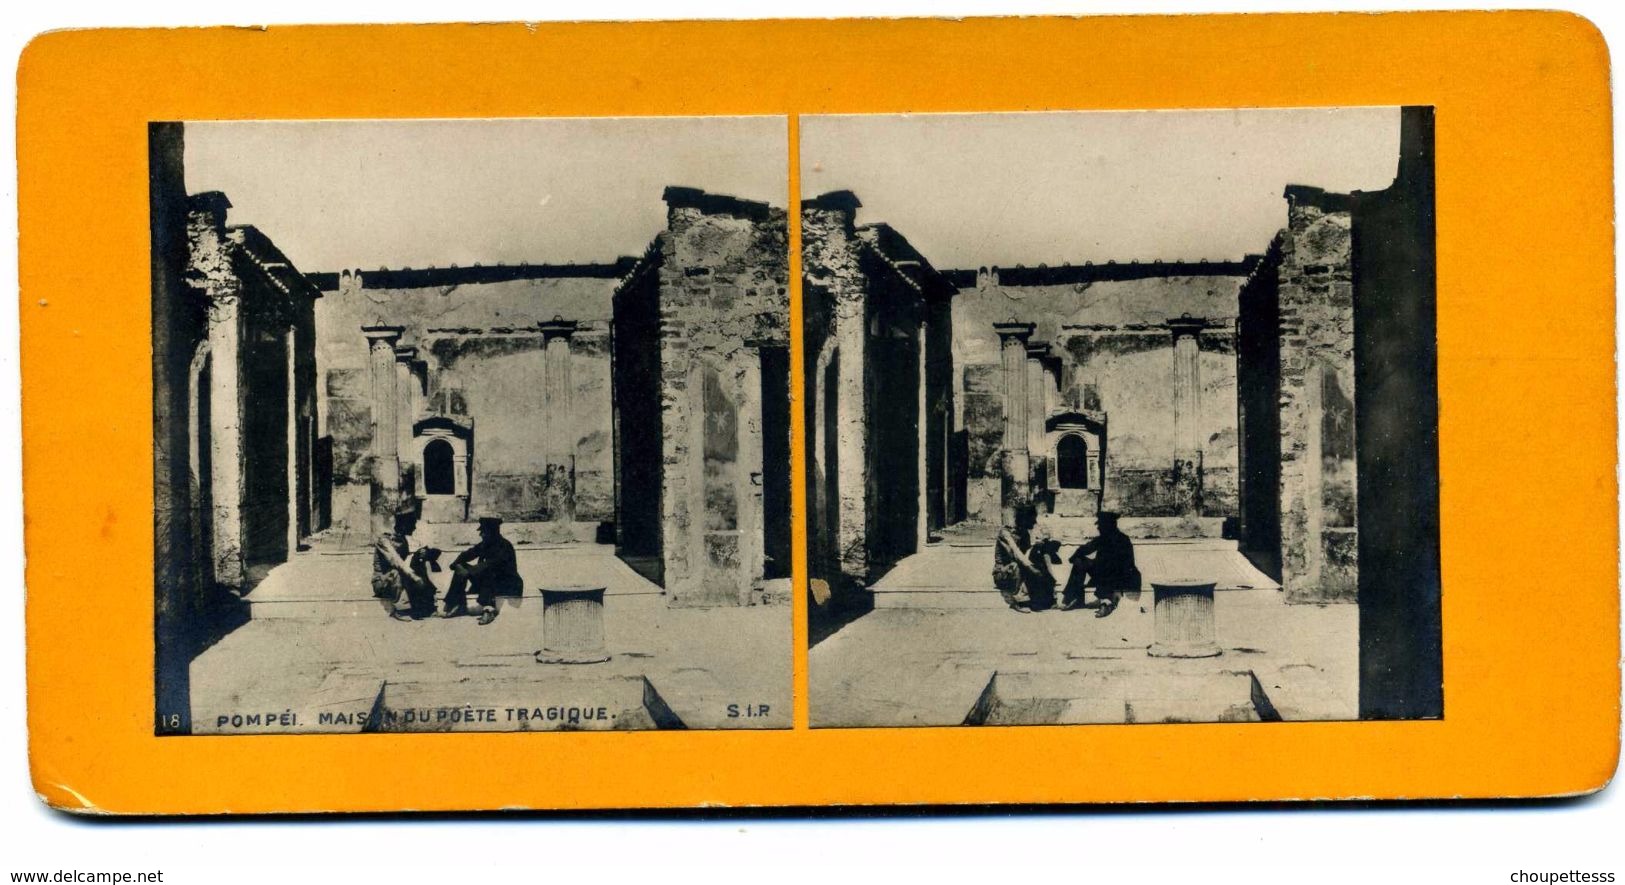 Photos  Stéréoscopiques - Pompei - Maison Du Poete Tragique  N° 18  ( SIP   éditeur ) - Photos Stéréoscopiques